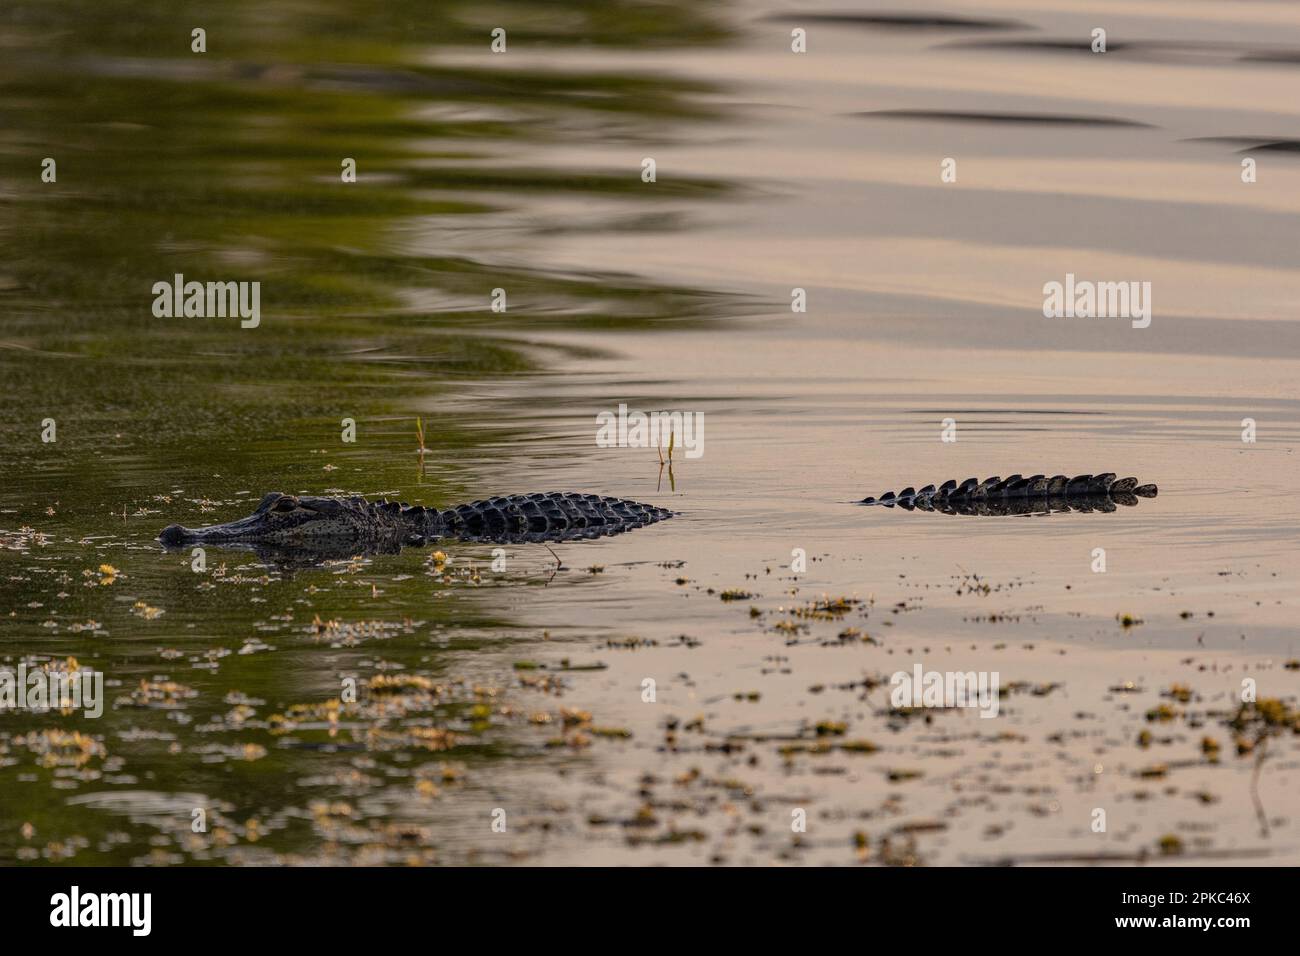 un cocodrilo está nadando en el agua verde con maleza, el agua está ondulada, se está escondiendo Foto de stock